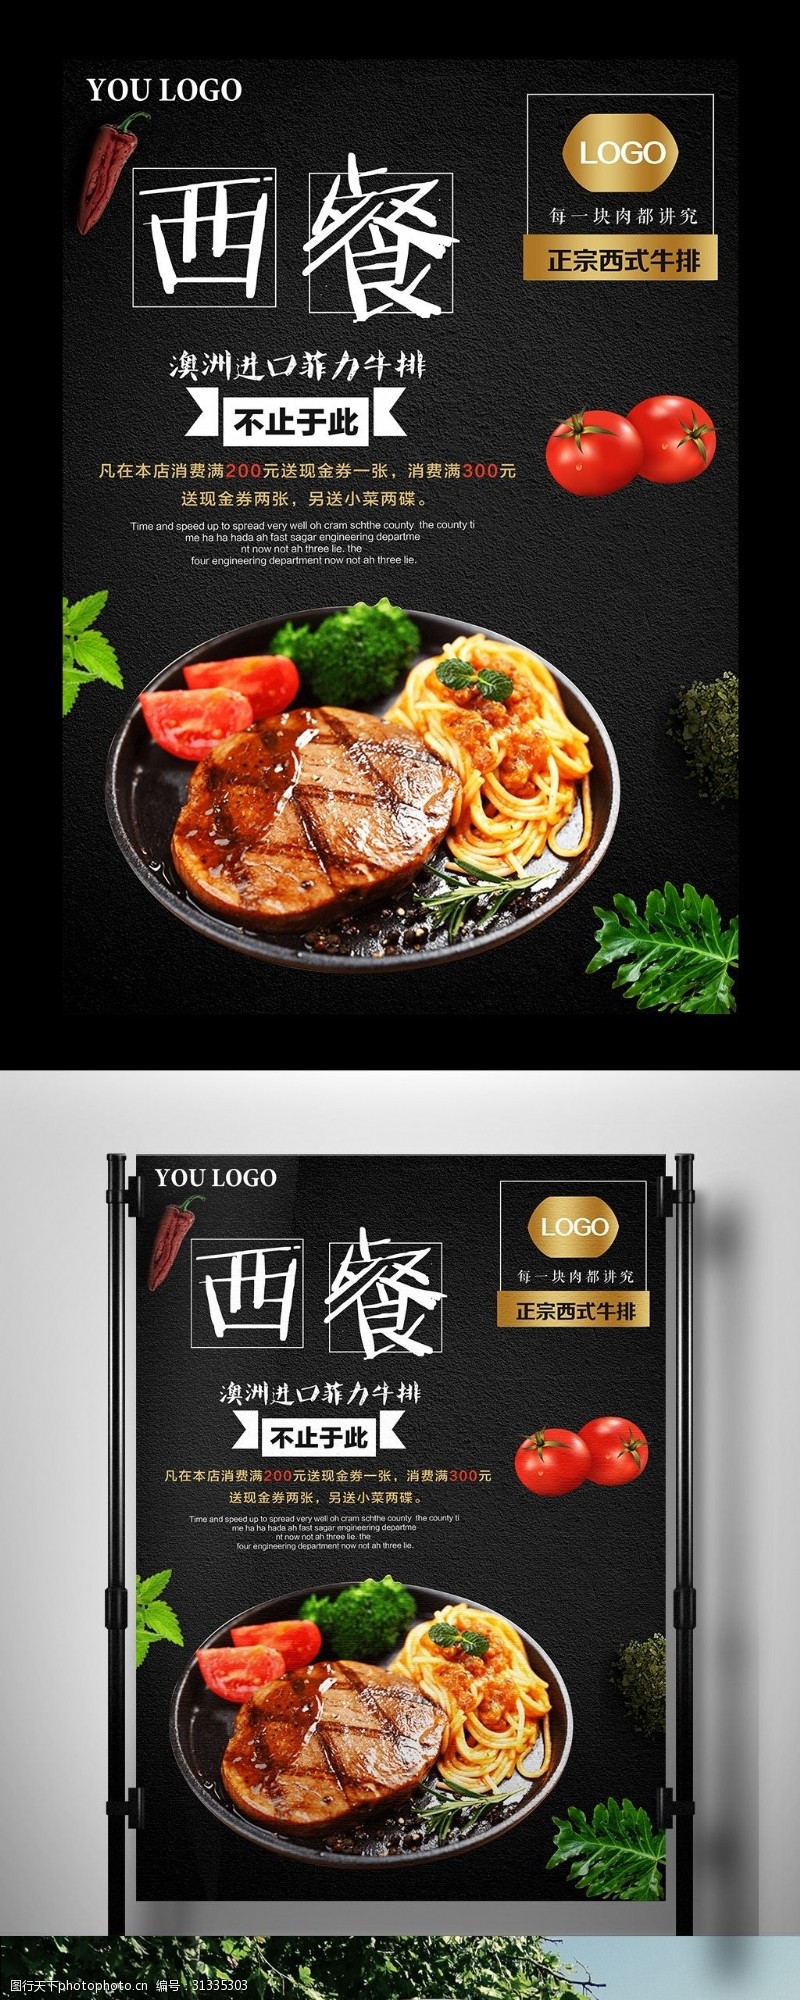 新老顾客黑色背景经典美食西餐宣传海报